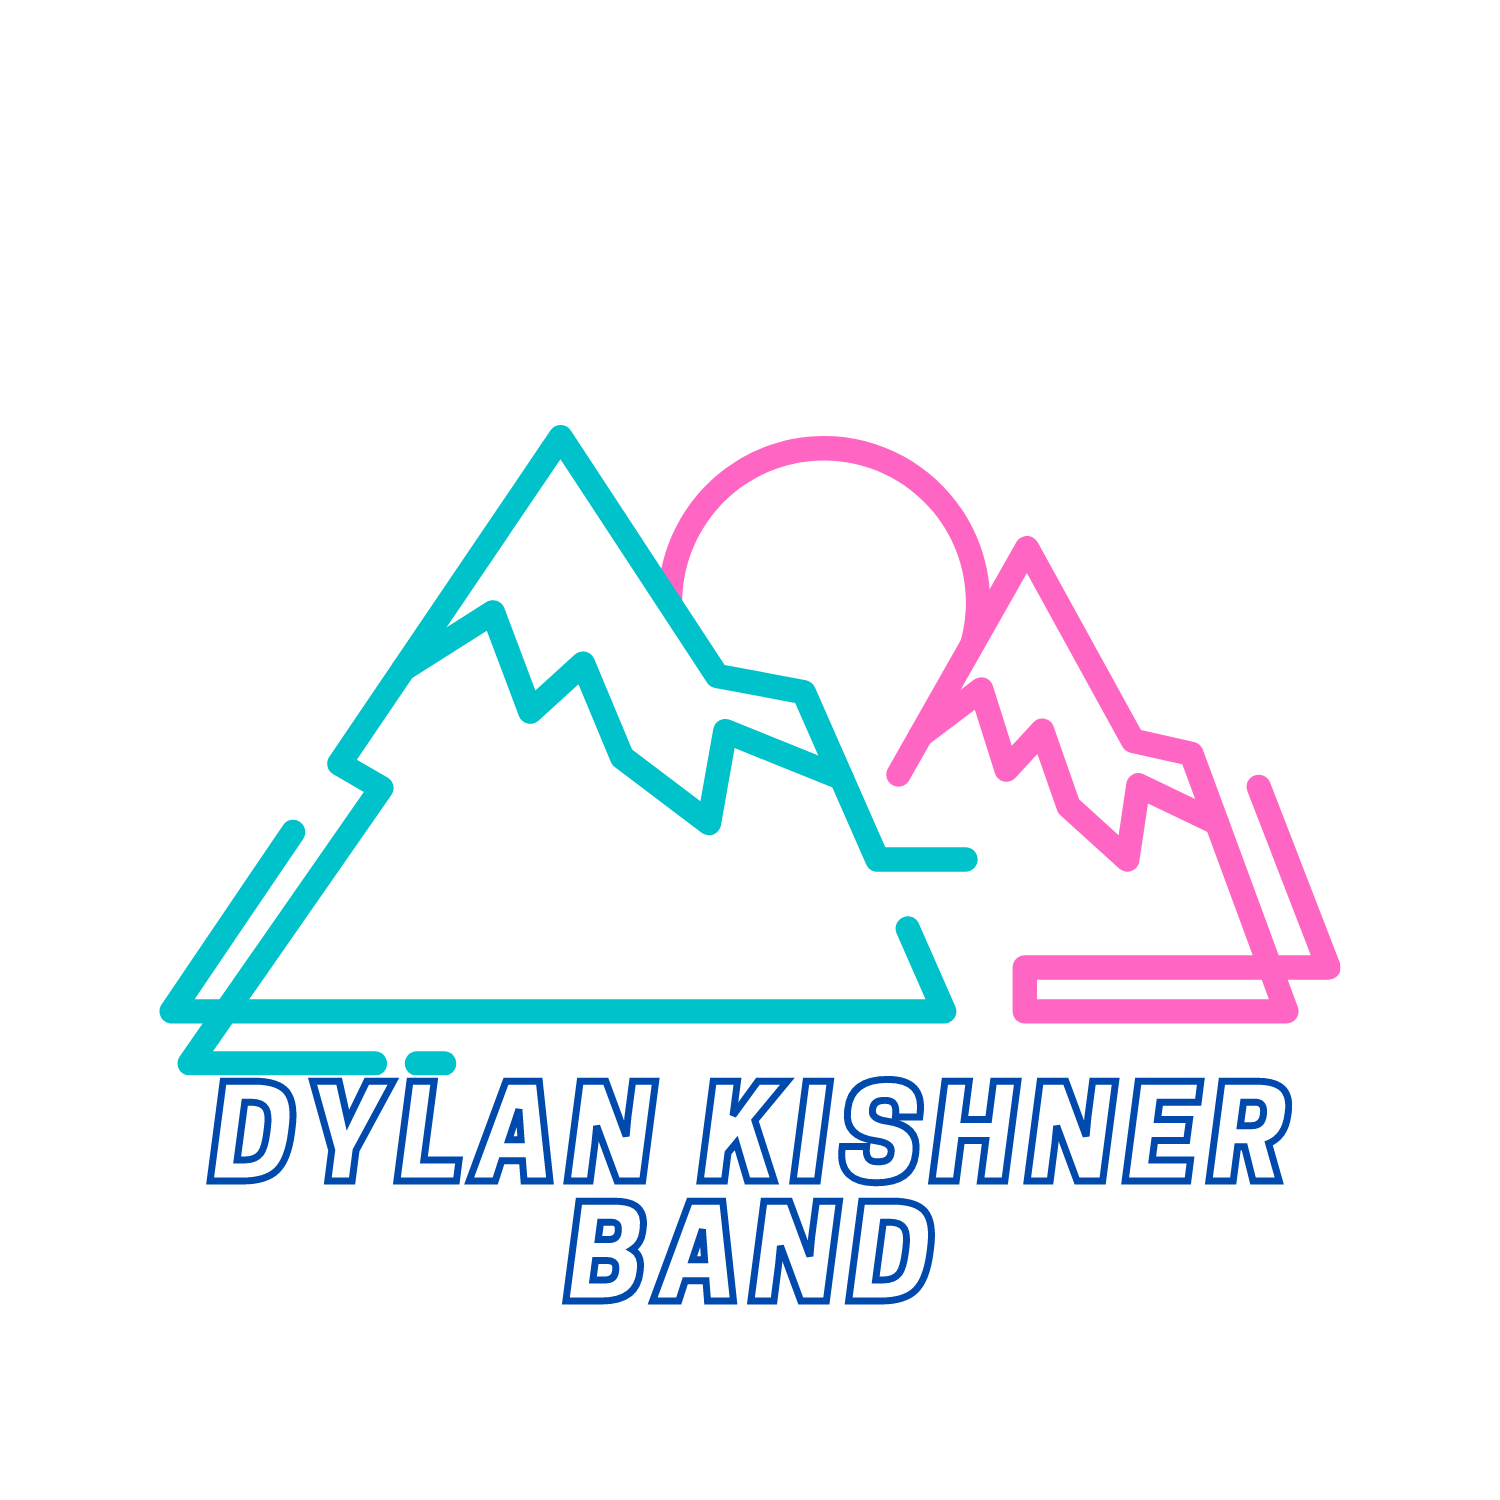 Dylan Kishner Band